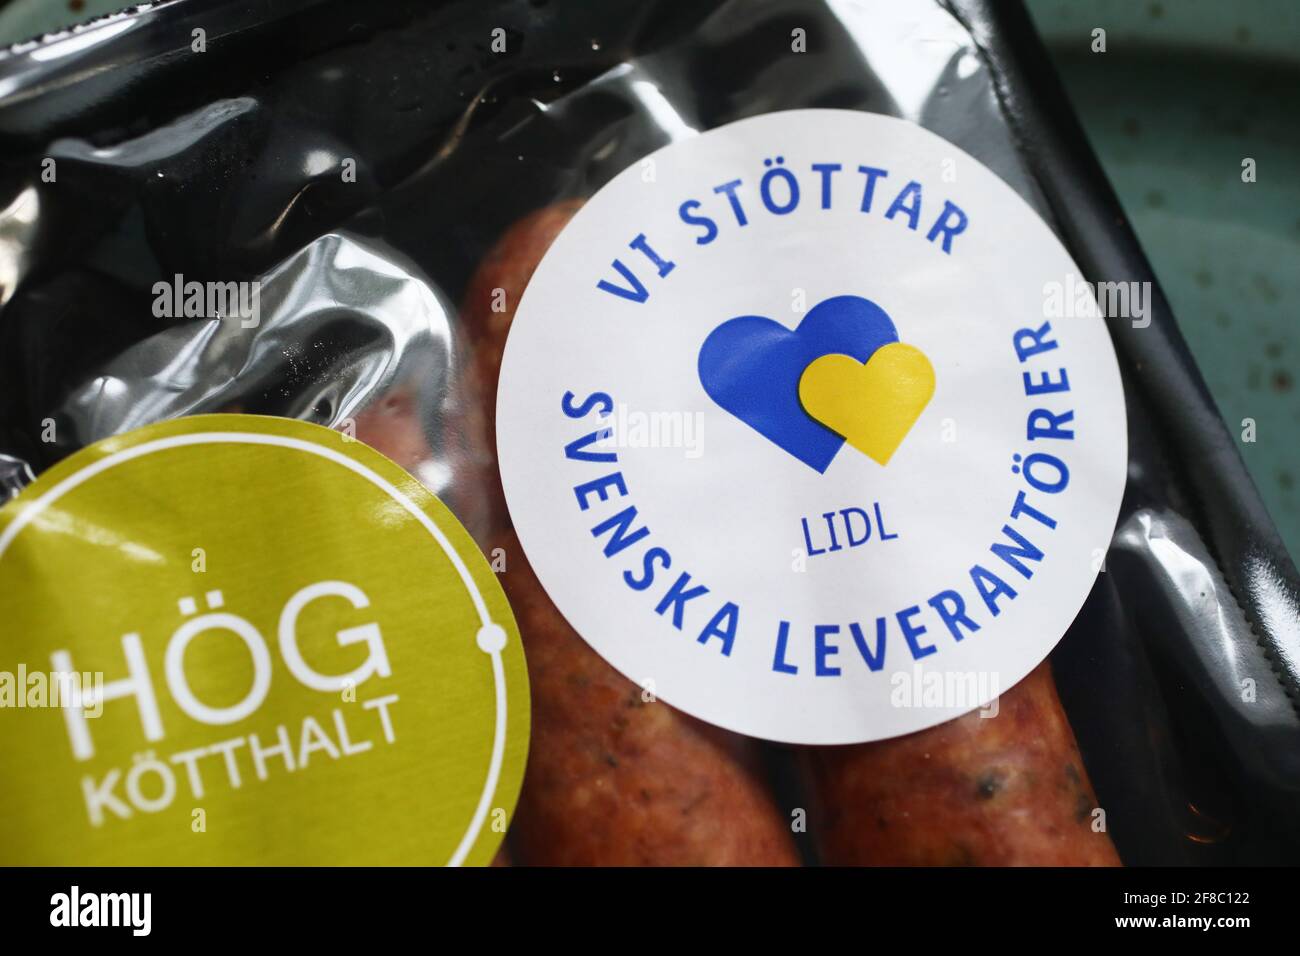 Saucisses de Lidl. Texte indiquant que Lidl prend en charge les fournisseurs suédois. Banque D'Images